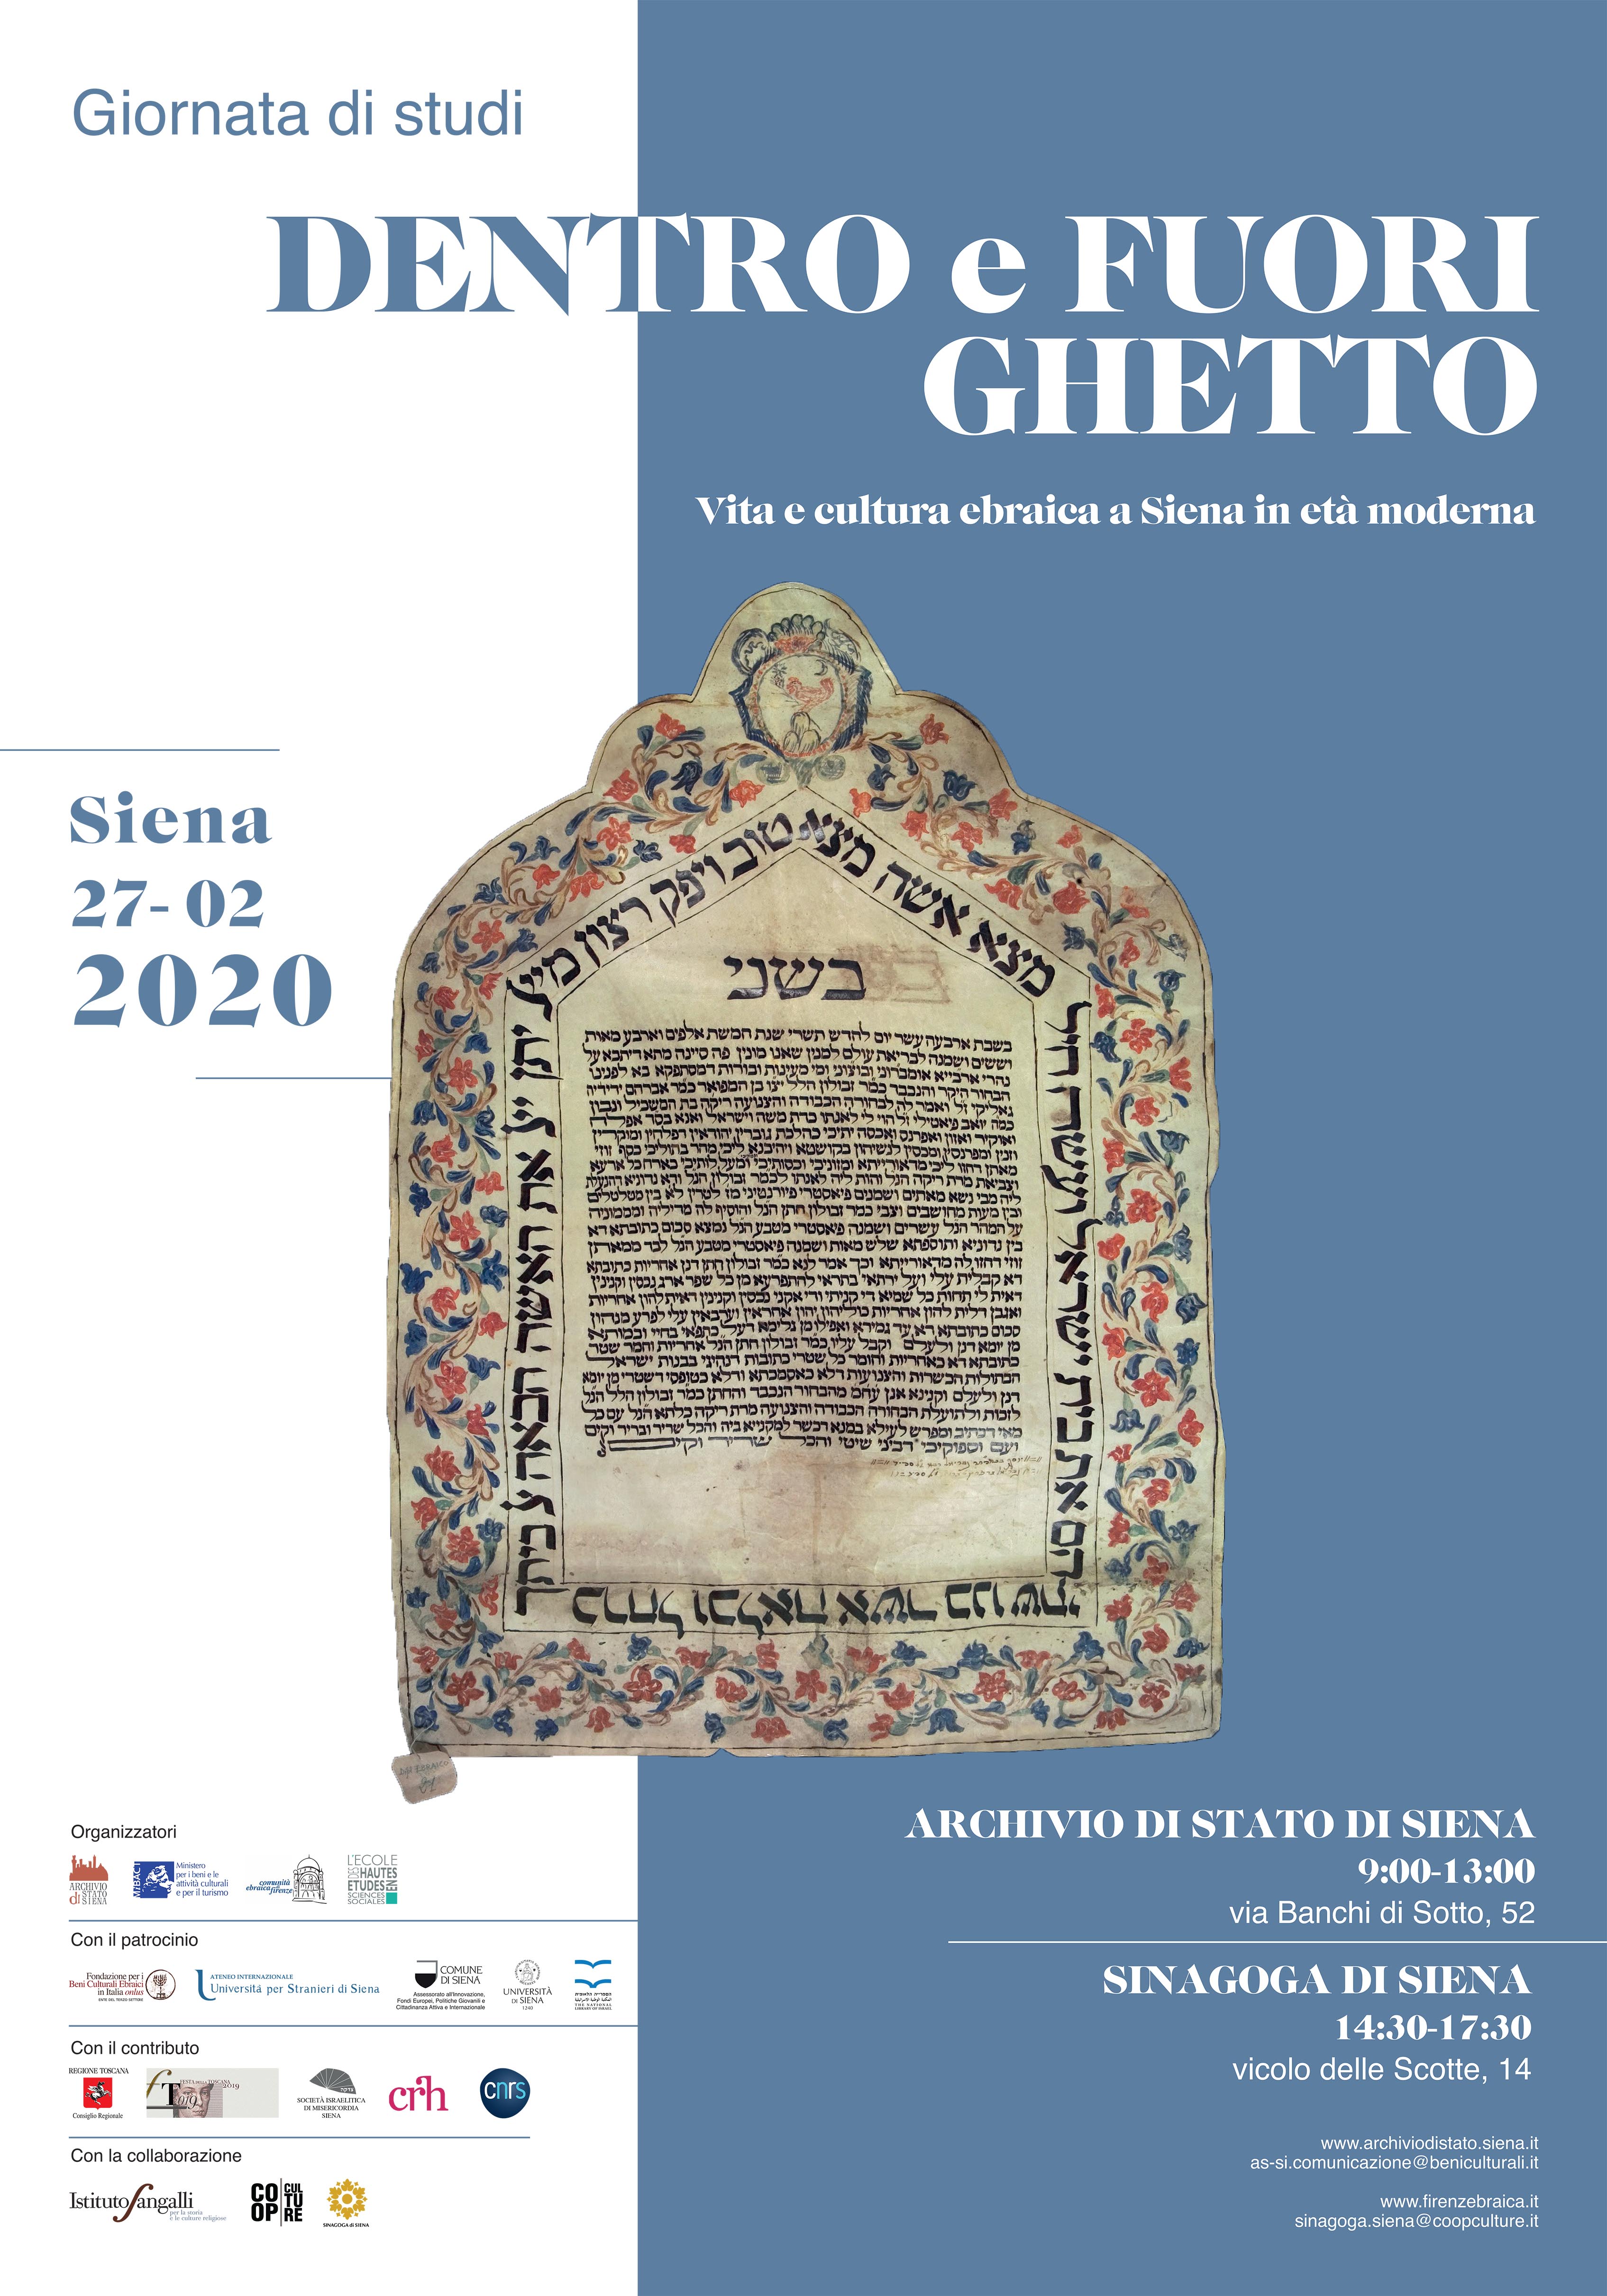 Dentro e fuori ghetto. Vita e cultura ebraica a Siena in età moderna